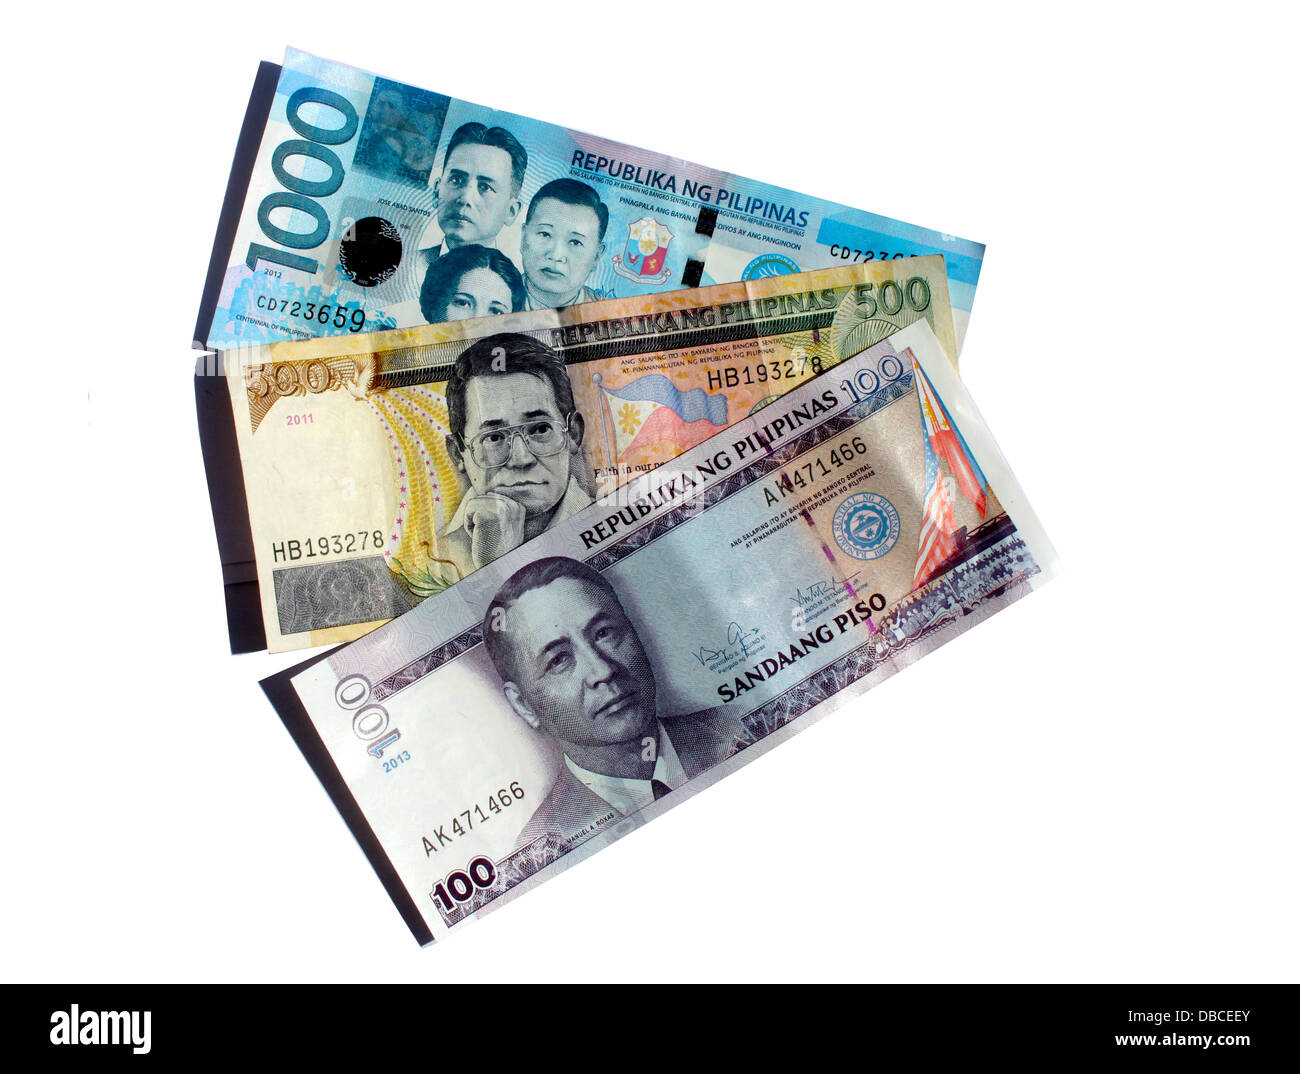 Philippine peso bills Stock Photo